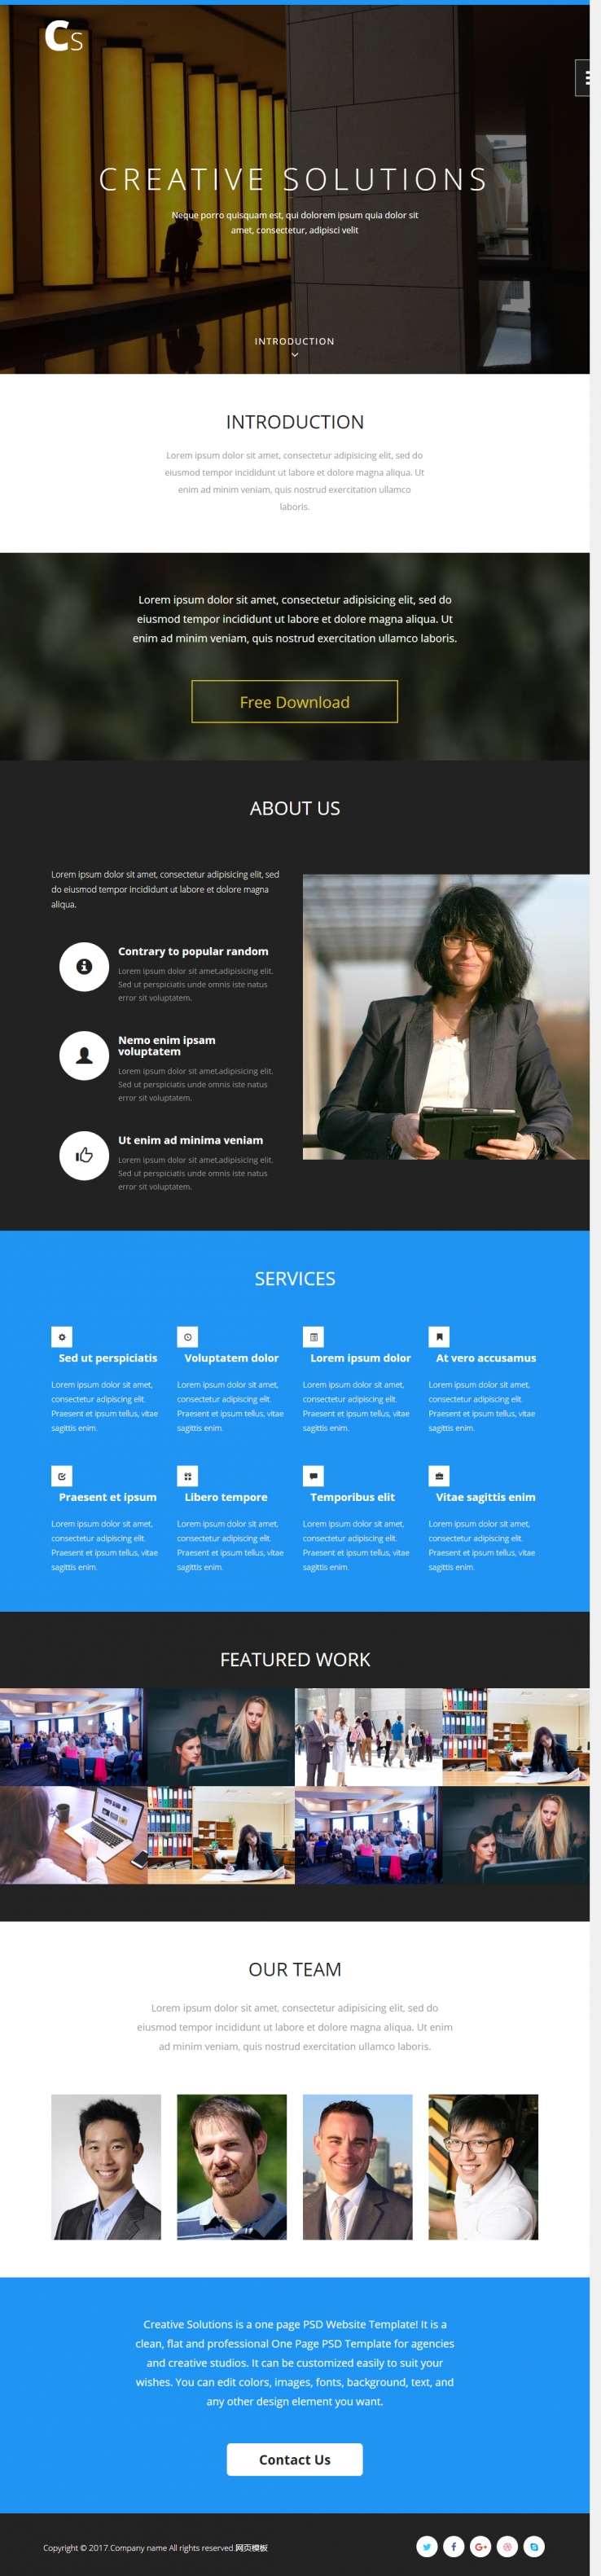 简洁白色风格的创意解决方案企业网站模板